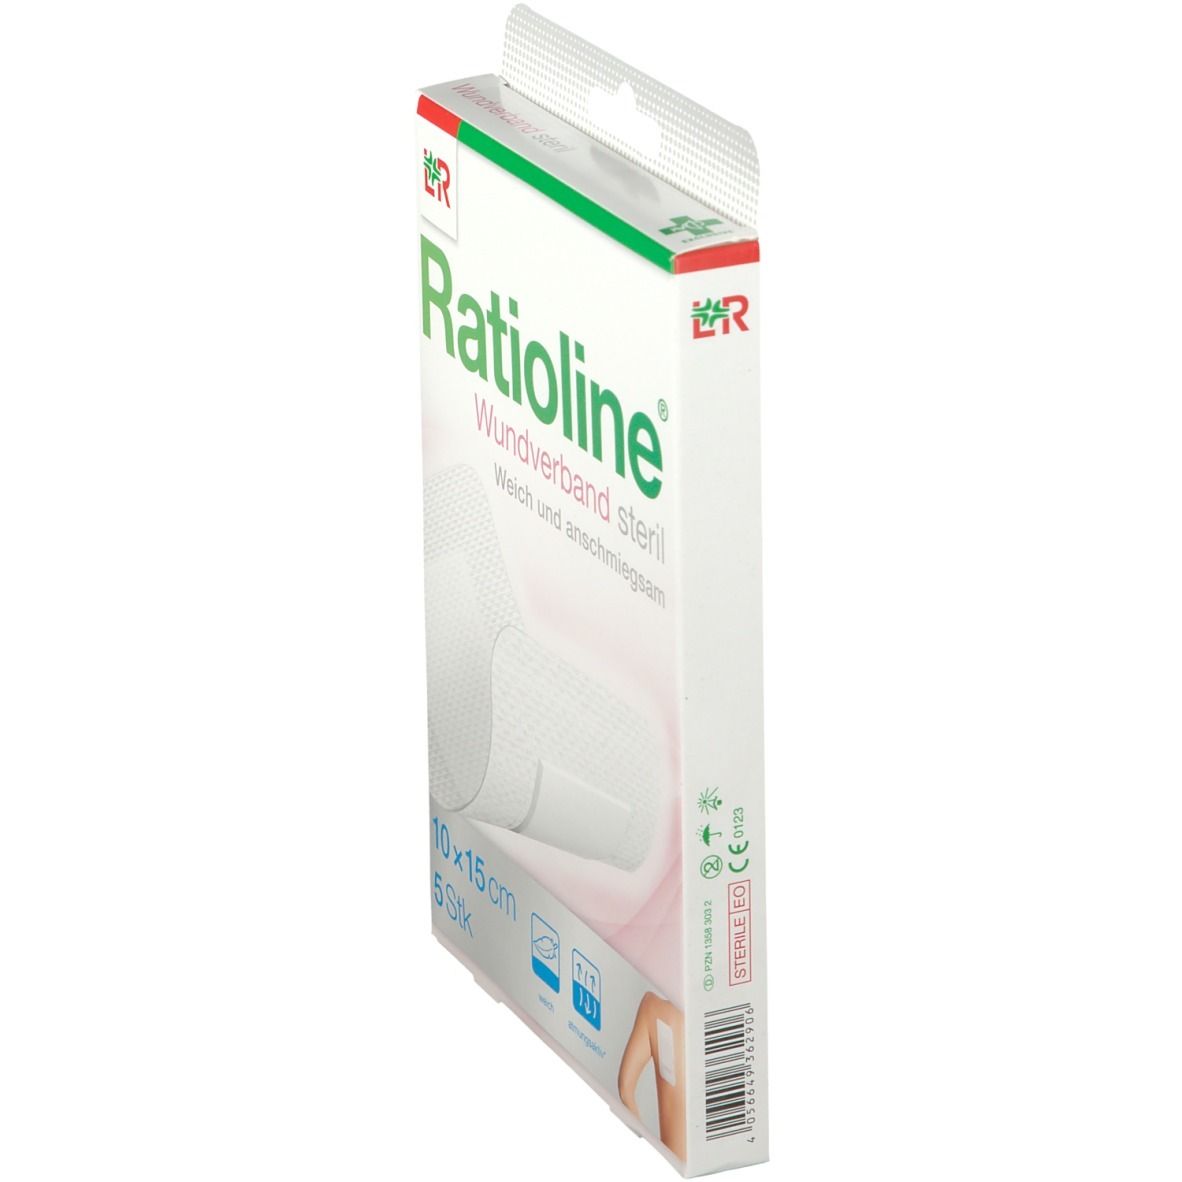 Ratioline® Wundverband 15 cm x 10 cm steril